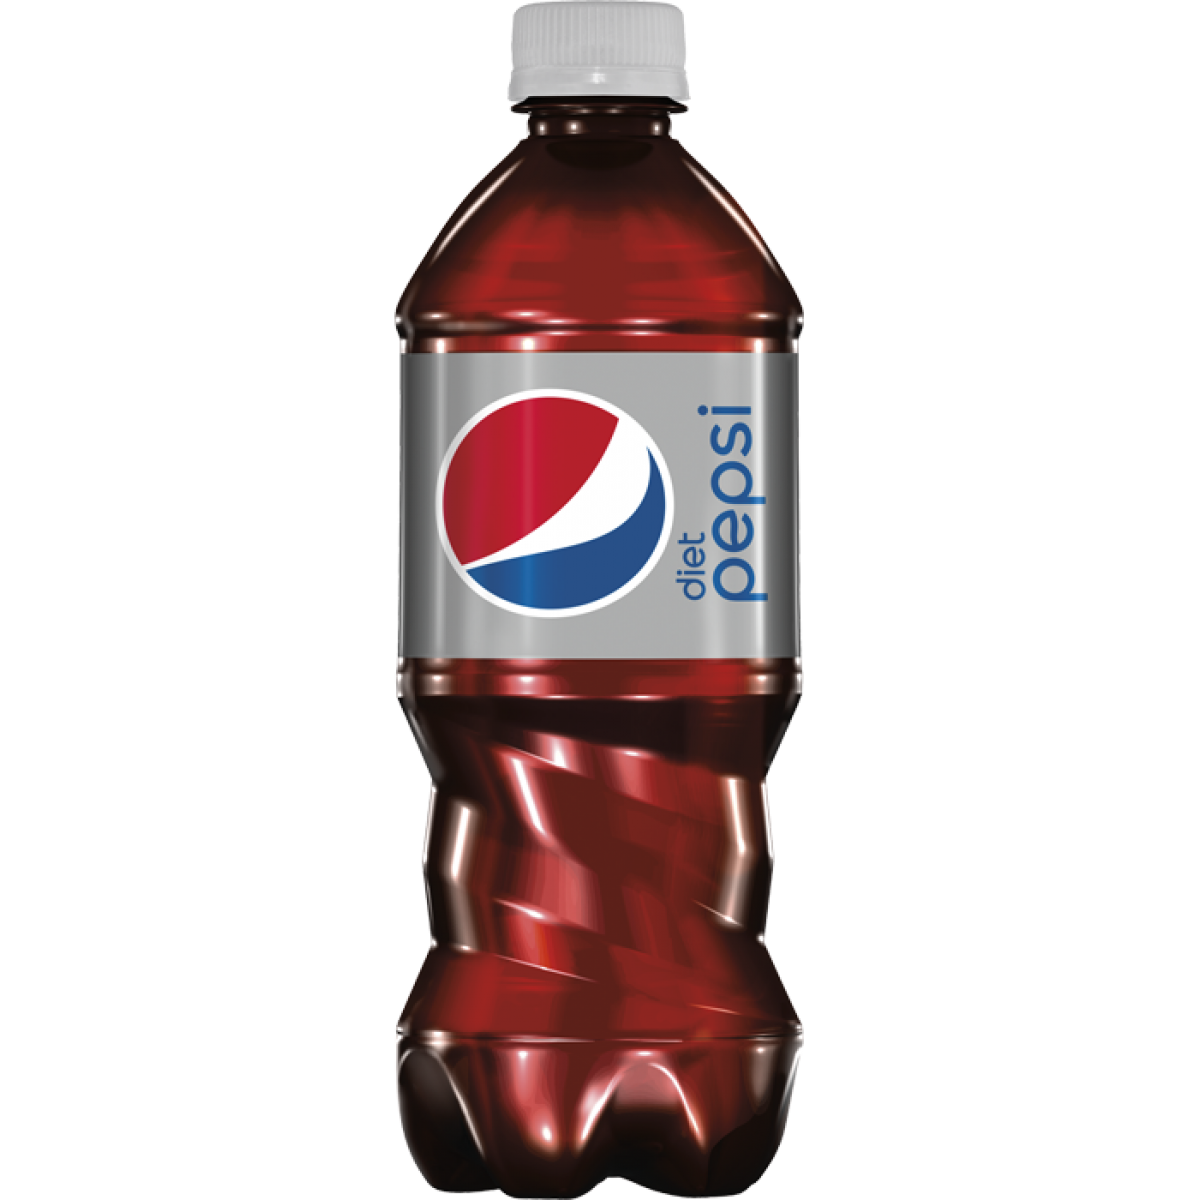 Büyük şişe Pepsi